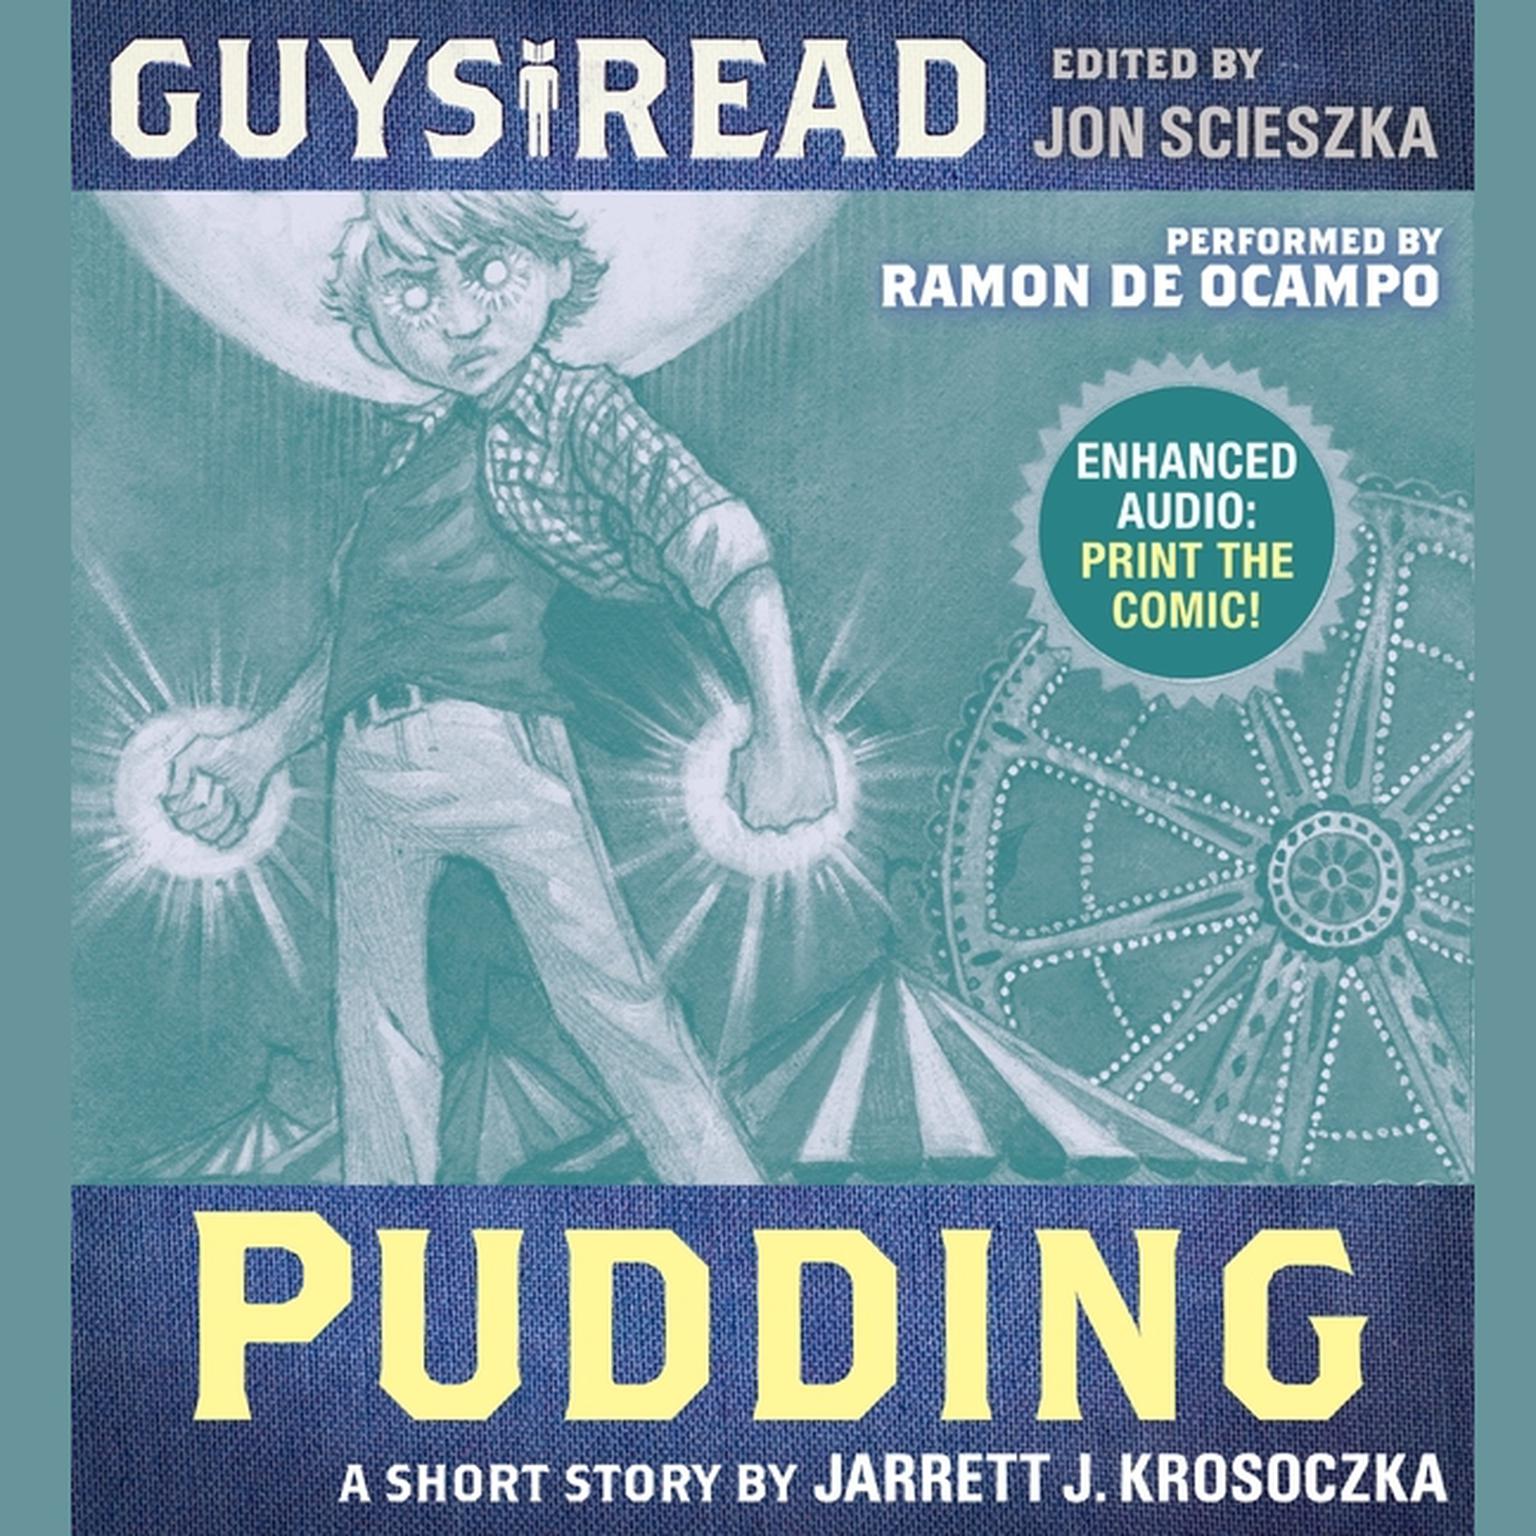 Guys Read: Pudding Audiobook, by Jarrett J. Krosoczka